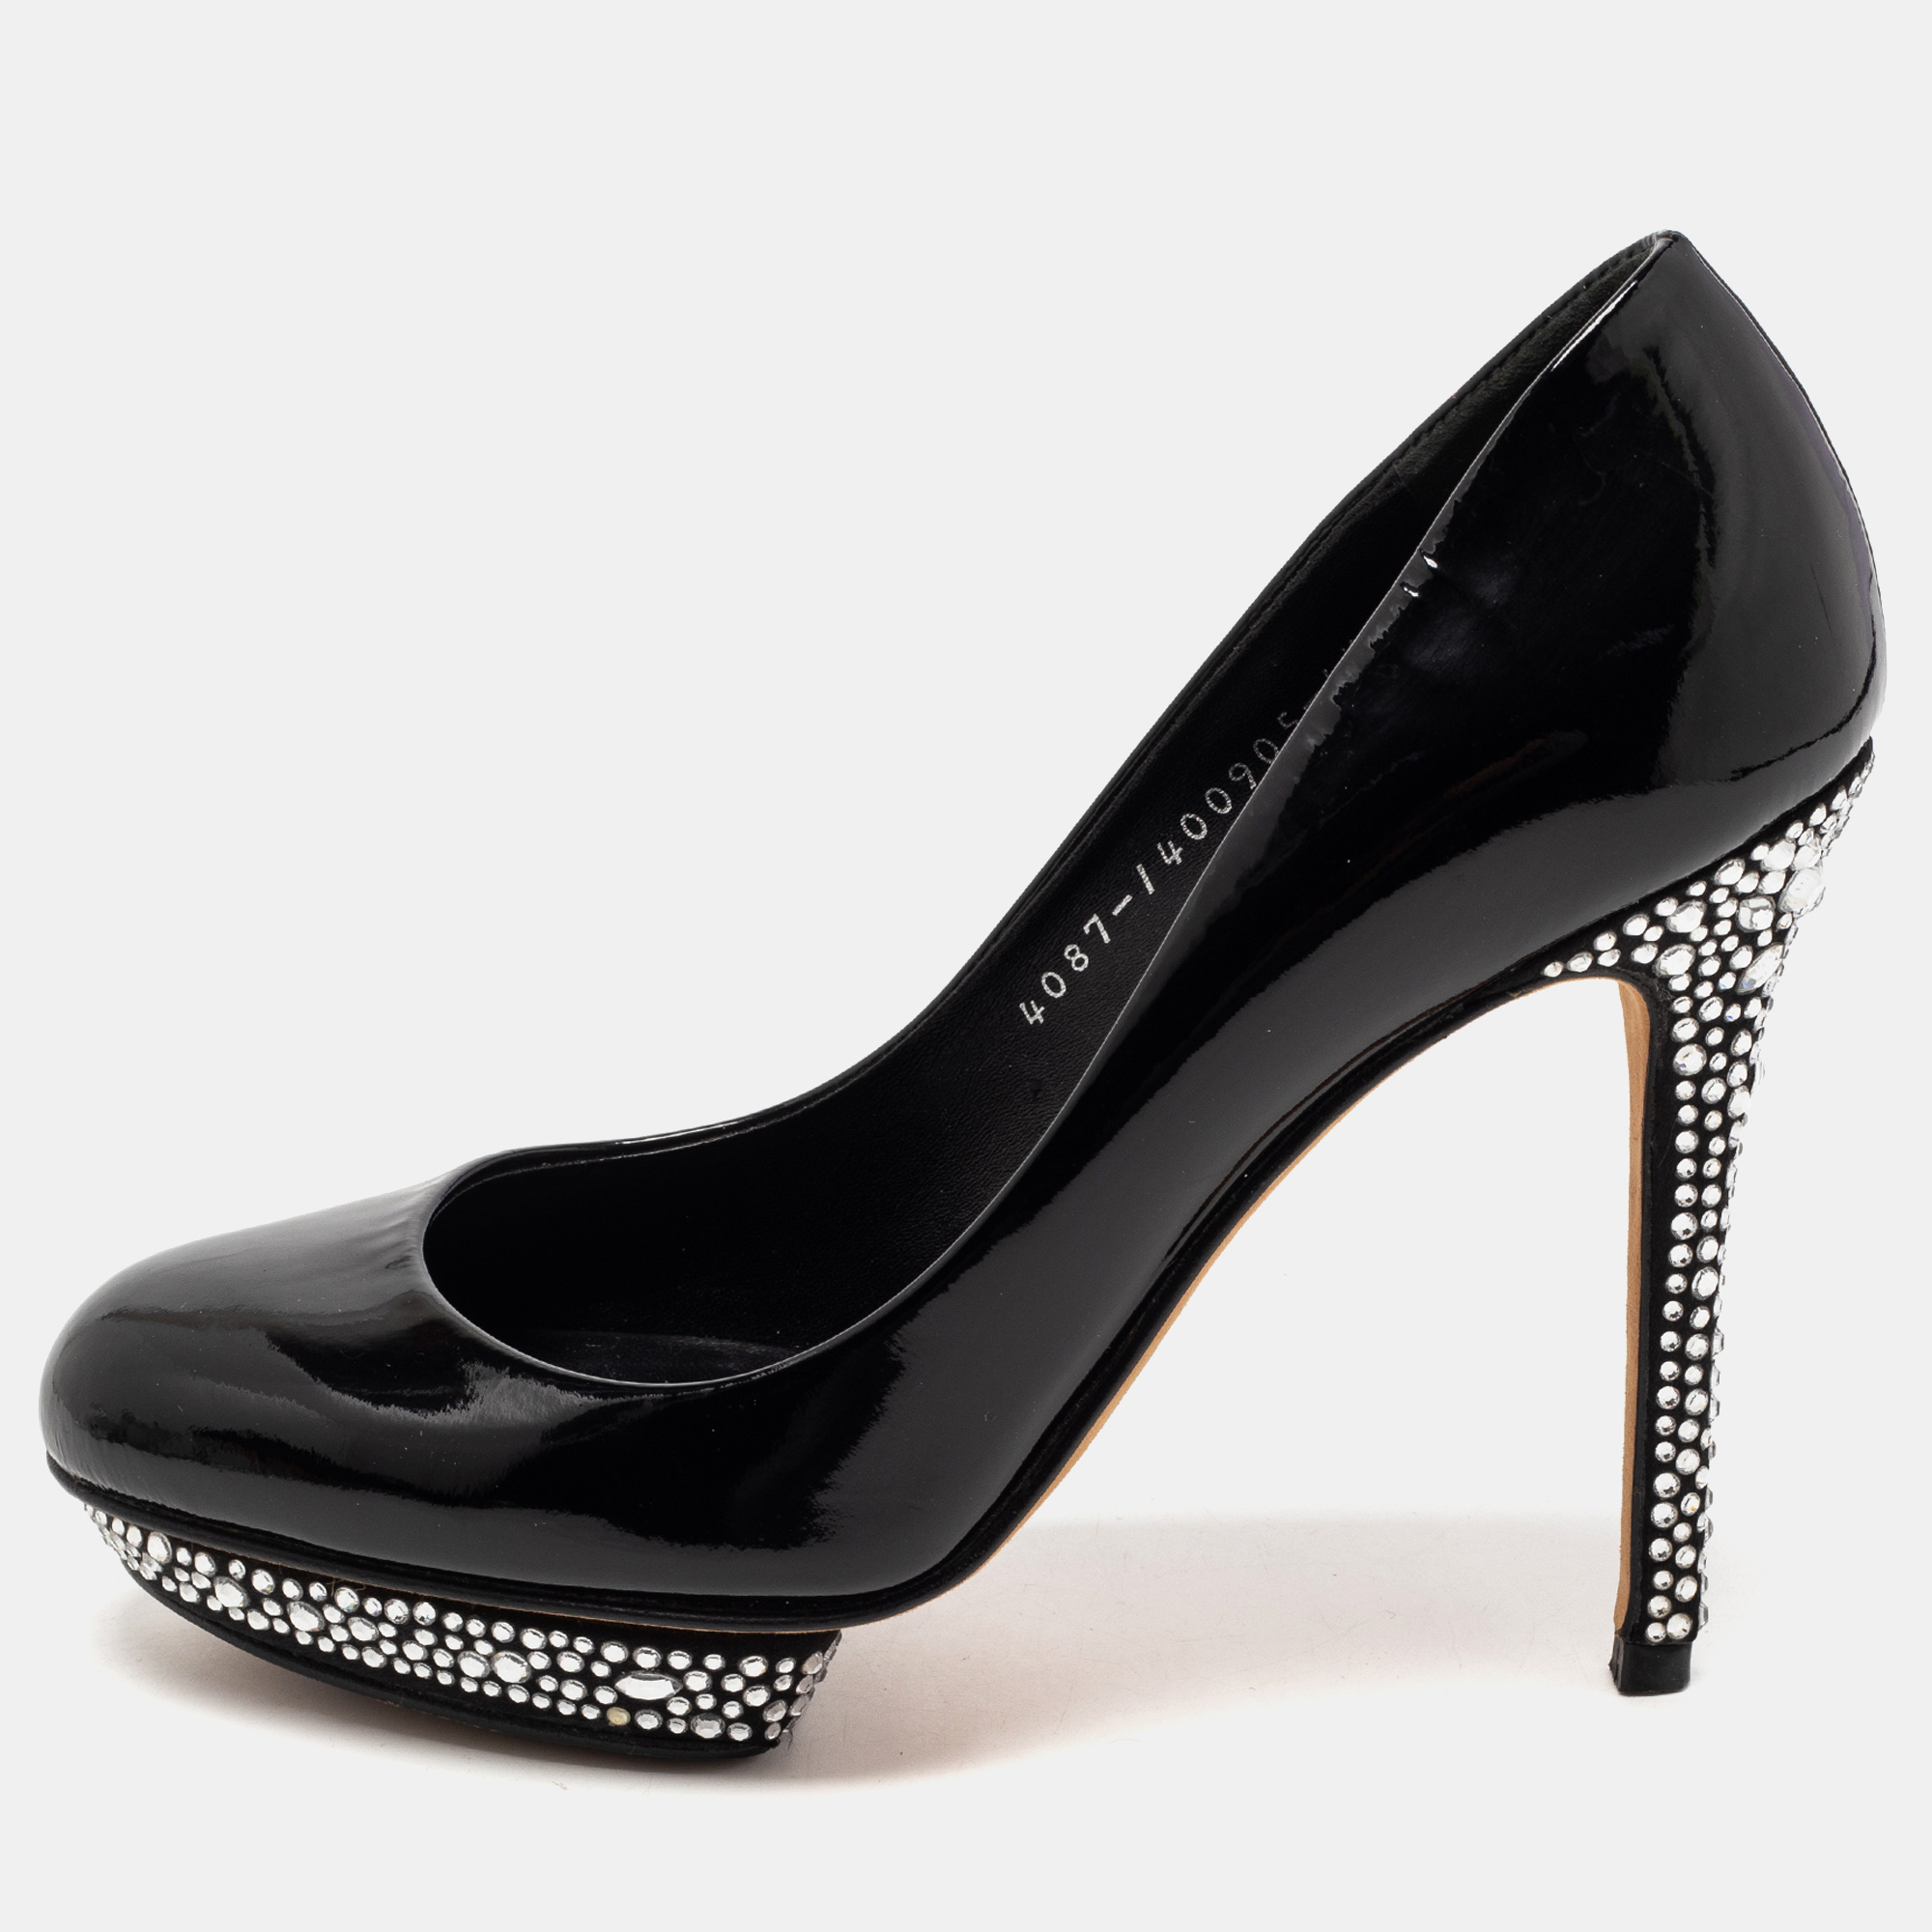 Pre-owned Gina Black Patent Leather Crystal Embellished Heel Platform Pumps Size 37.5